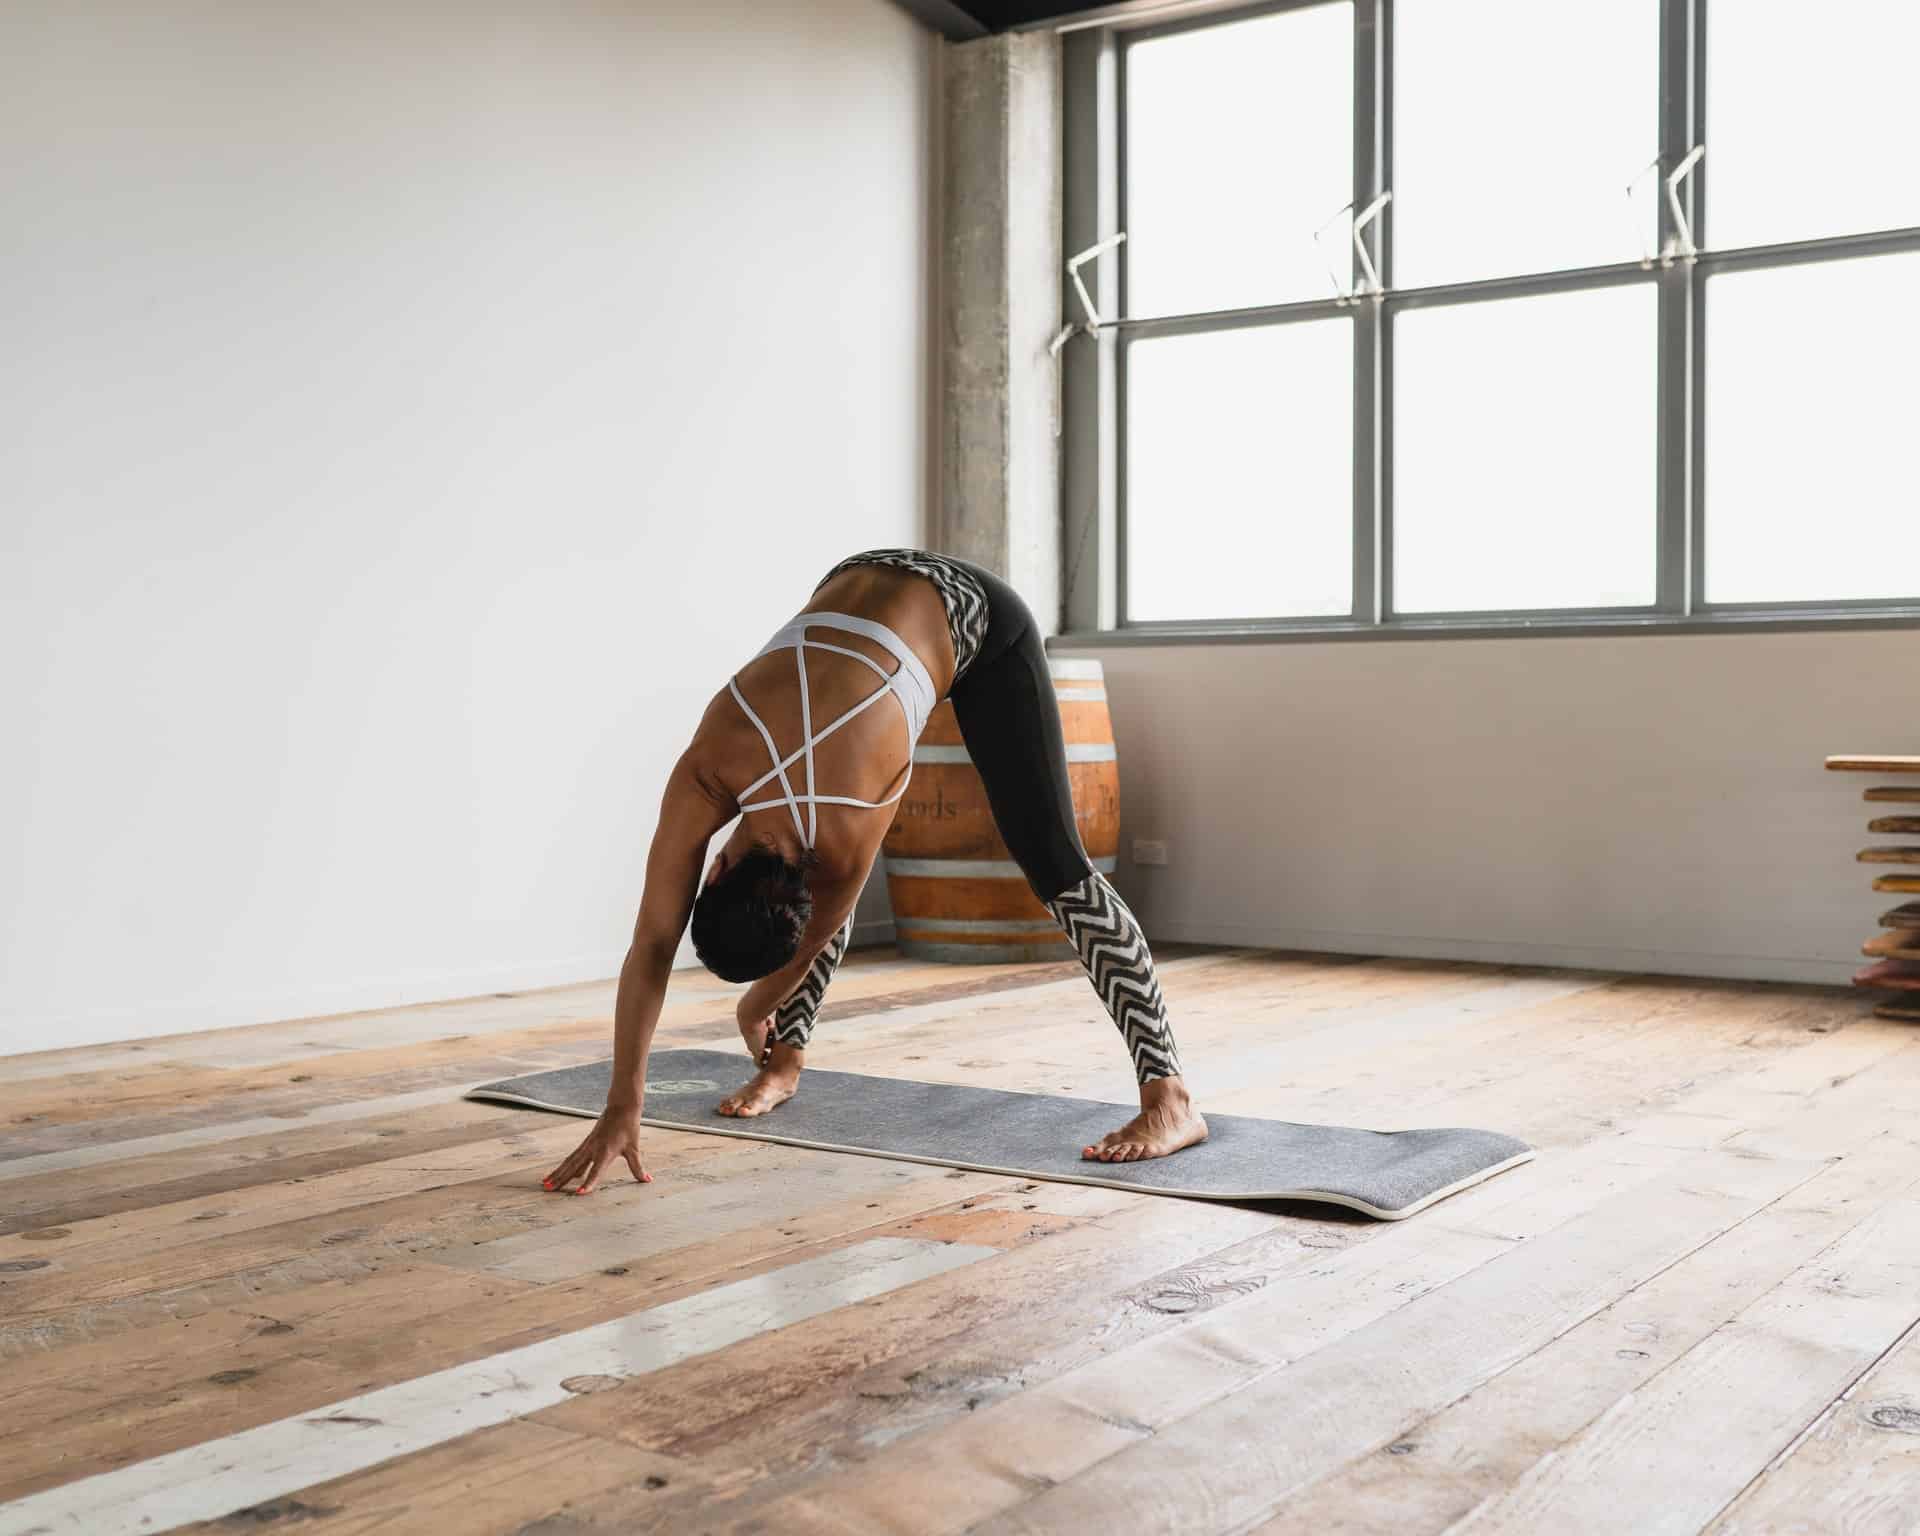 Gruba mata do jogi — dlaczego jest potrzebna podczas ćwiczeń?